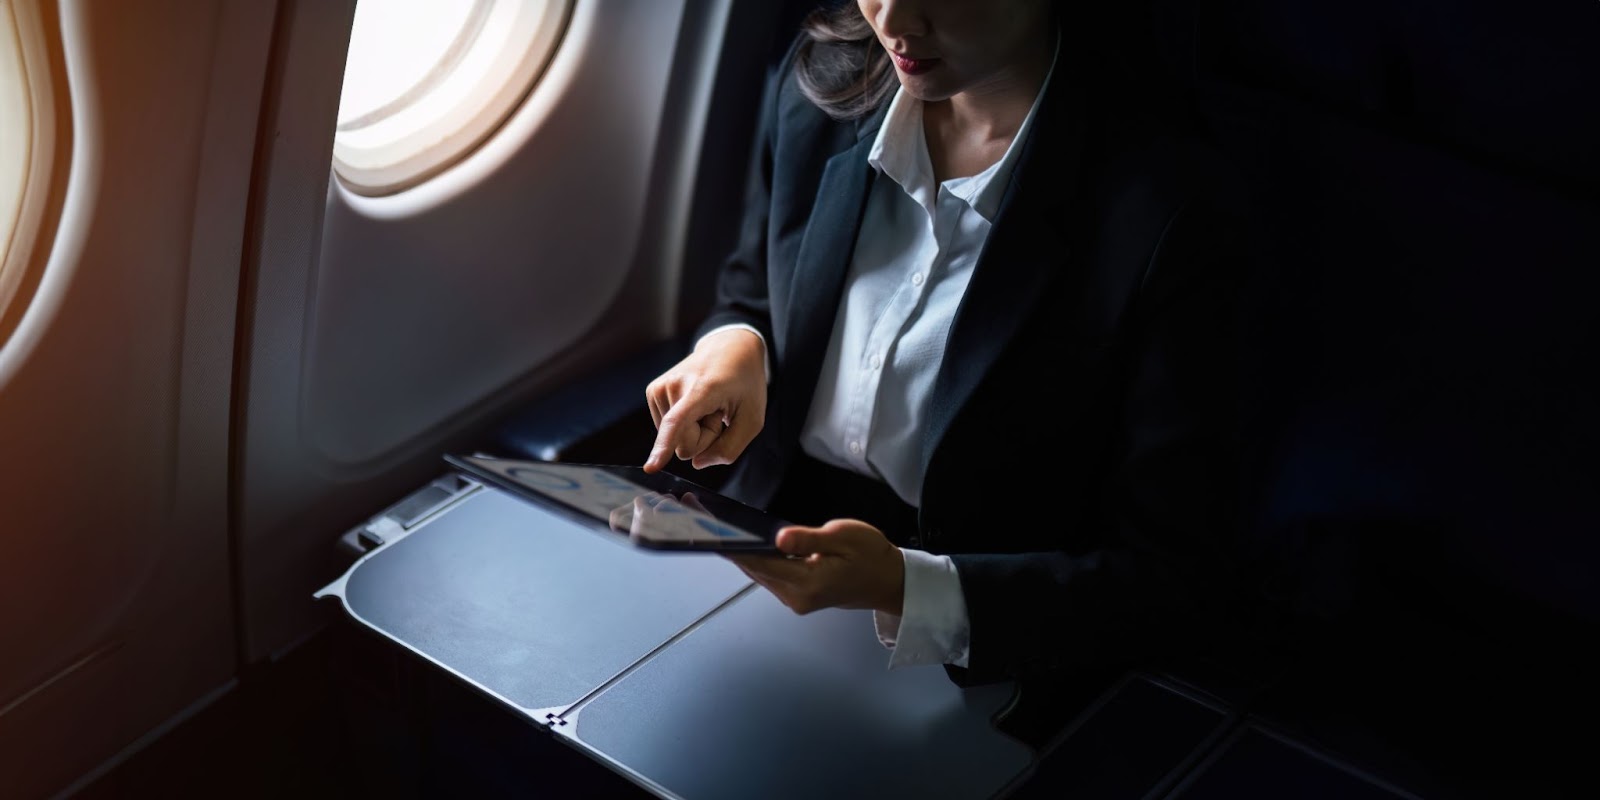 mujer de negocios en el interior de un avión. Está sentada junto a una ventana, utilizando una tablet colocada sobre la mesa desplegable del asiento.